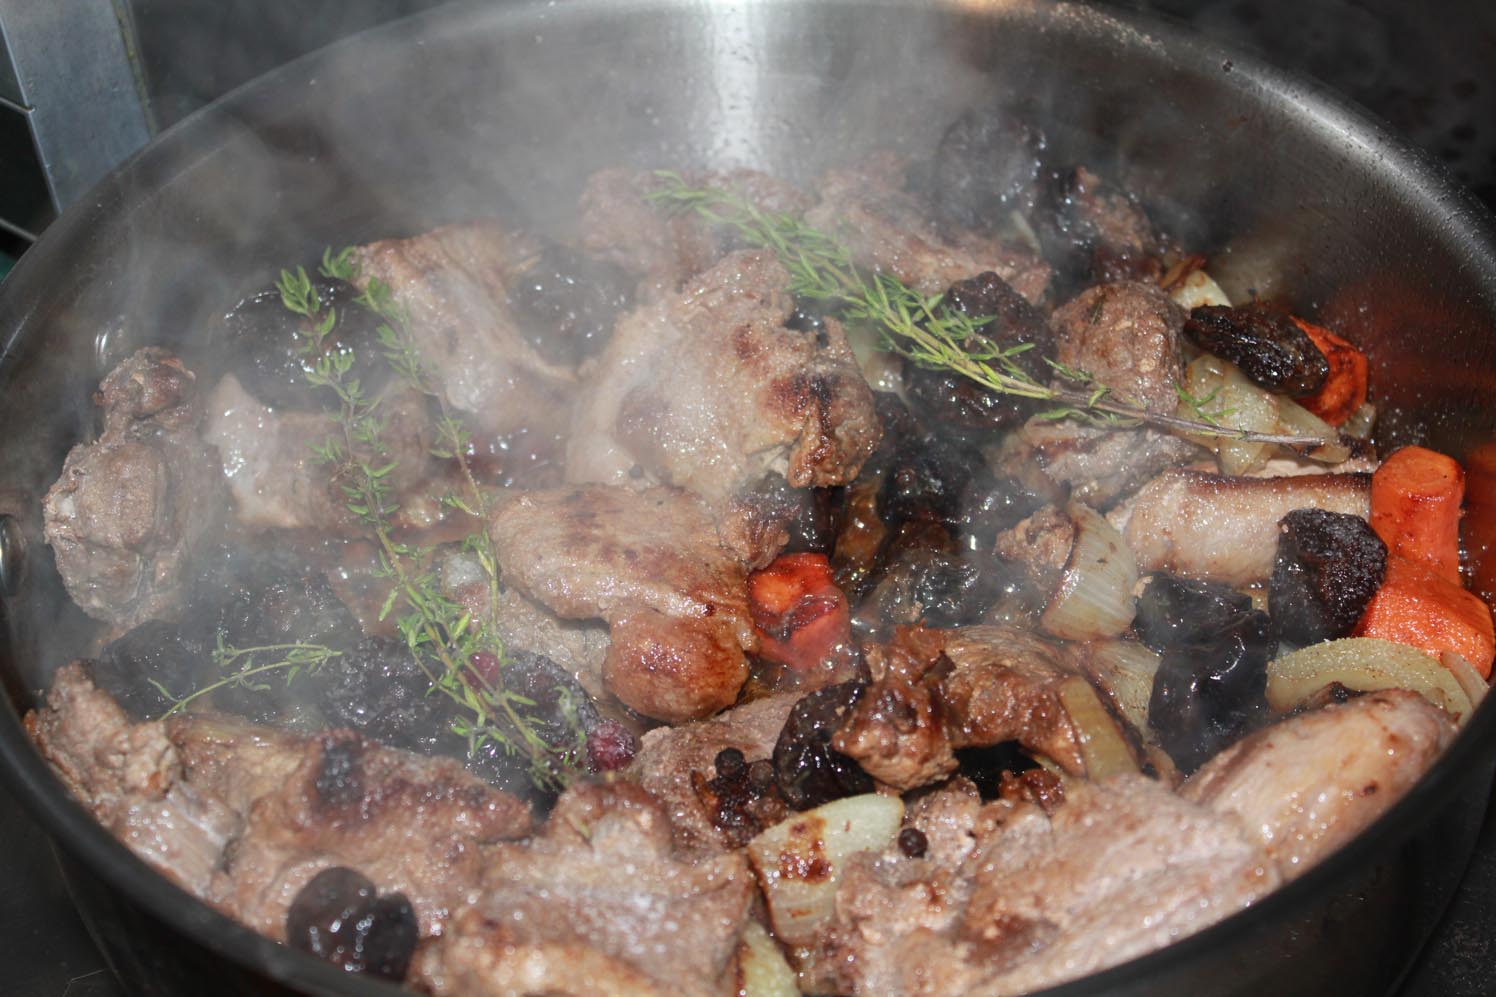  охотничья кухня, охотничья культура, охота, как готовить дичь,  как готовить охотничьи блюда, русская охотничья кухня, европейская охотничья кухня, кабанятина, мясо кабана, как готовить мясо кабана